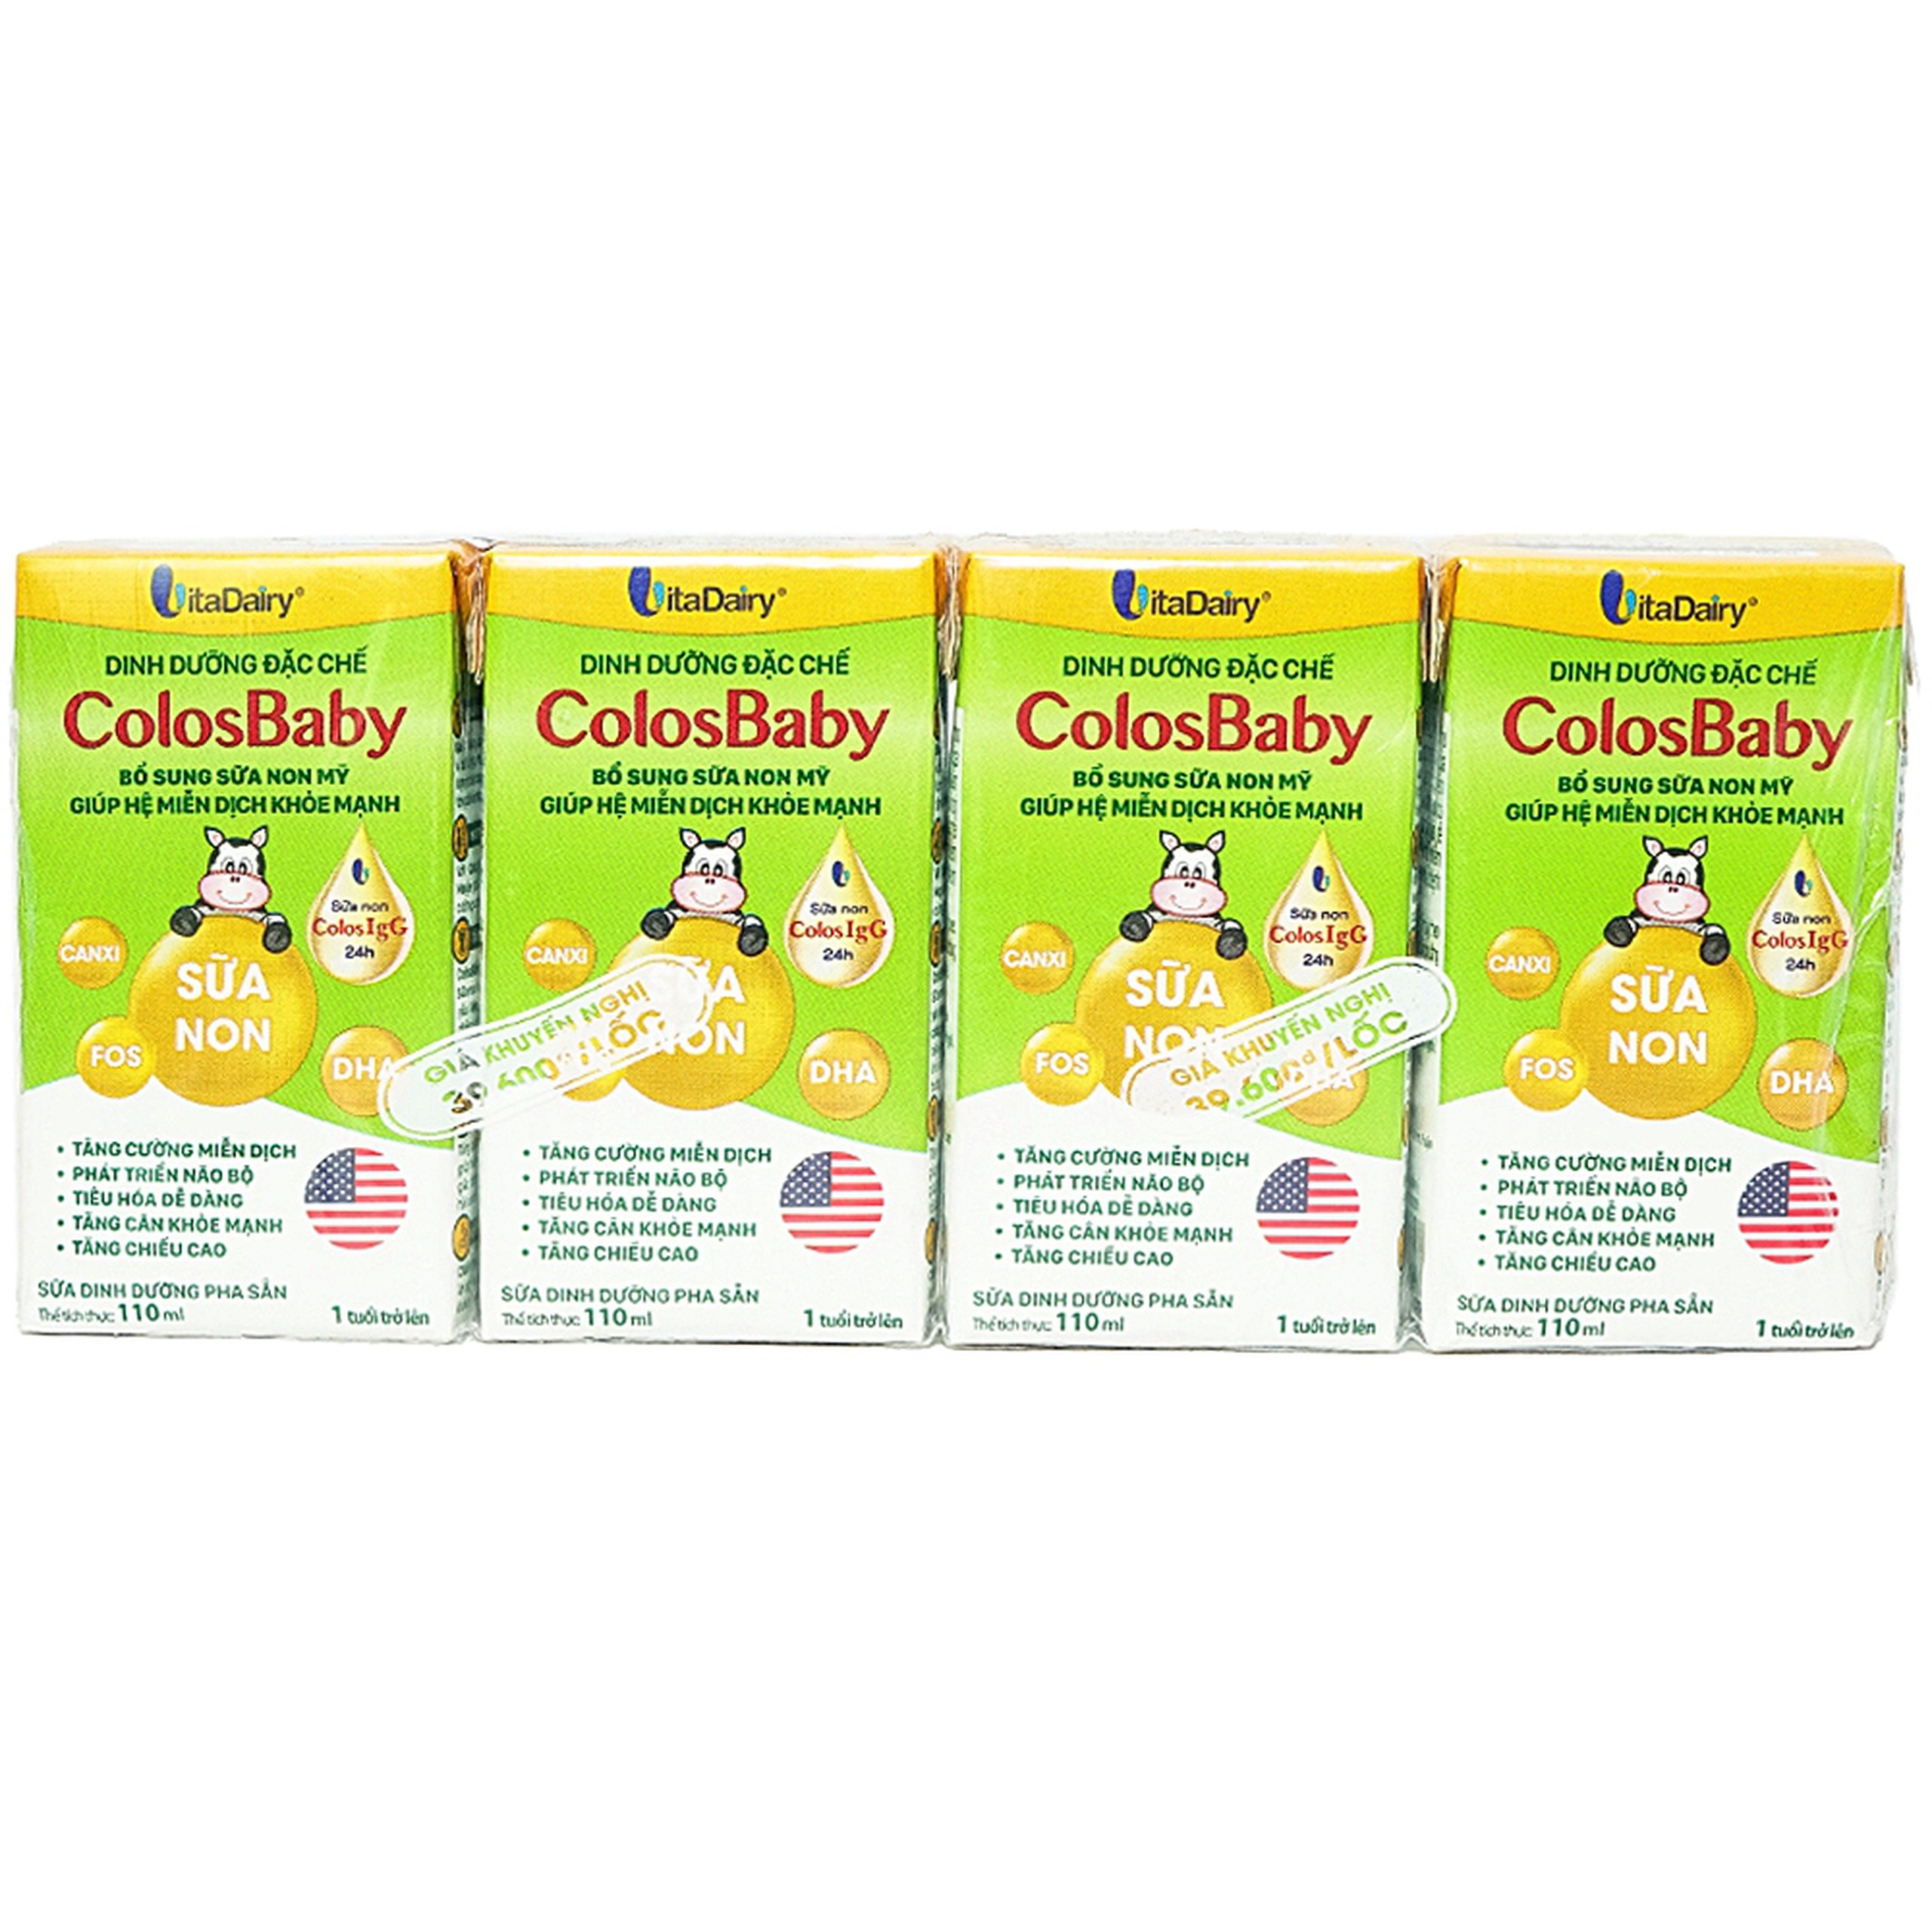 Sữa ColosBaby Vitadairy bổ sung sữa non Mỹ giúp hệ miễn dịch khỏe mạnh (Lốc 4 hộp)